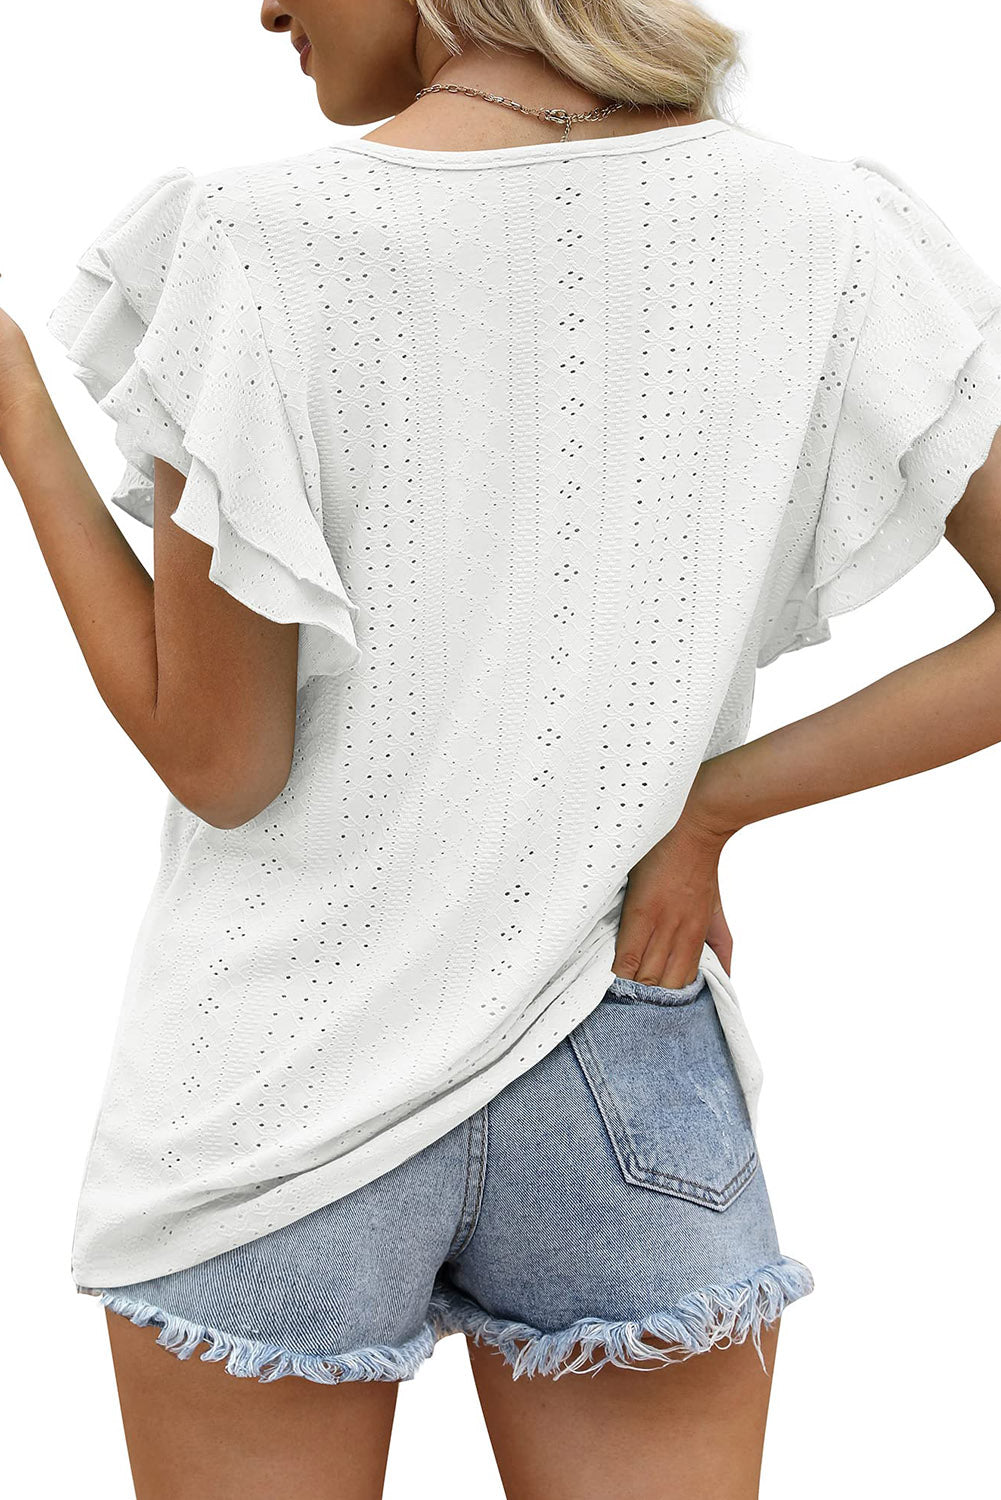 ΑΜΕΣΑ ΔΙΑΘΕΣΙΜΟ: άσπρο κοντομάνικο μπλουζάκι SOO WHITE